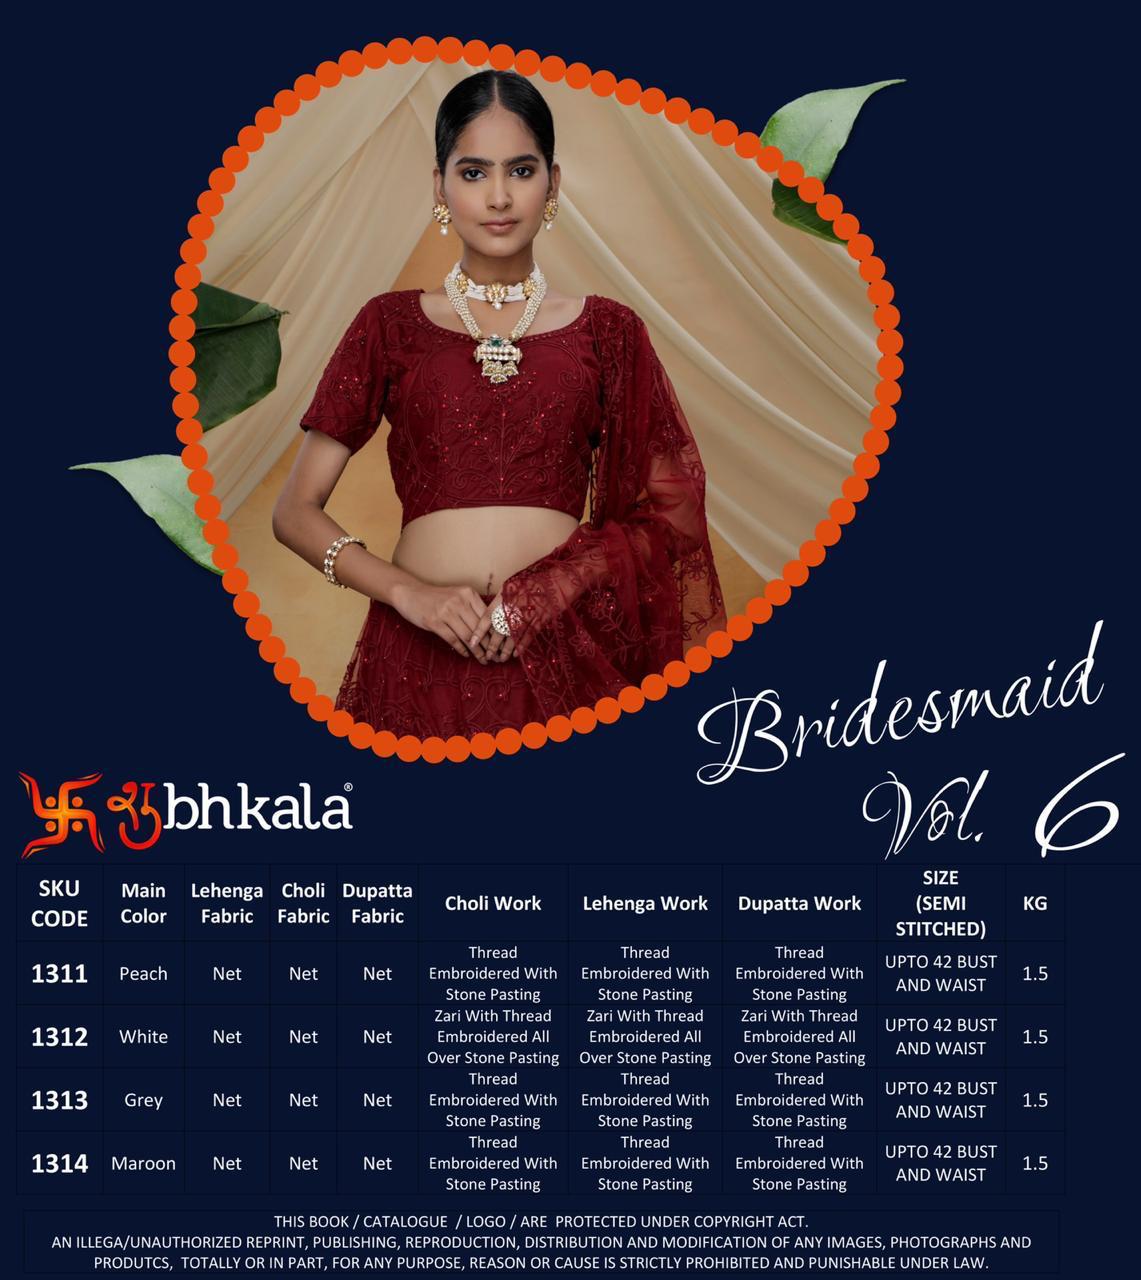 shubhkala bridesmaid vol 6 regal look lehenga catalog